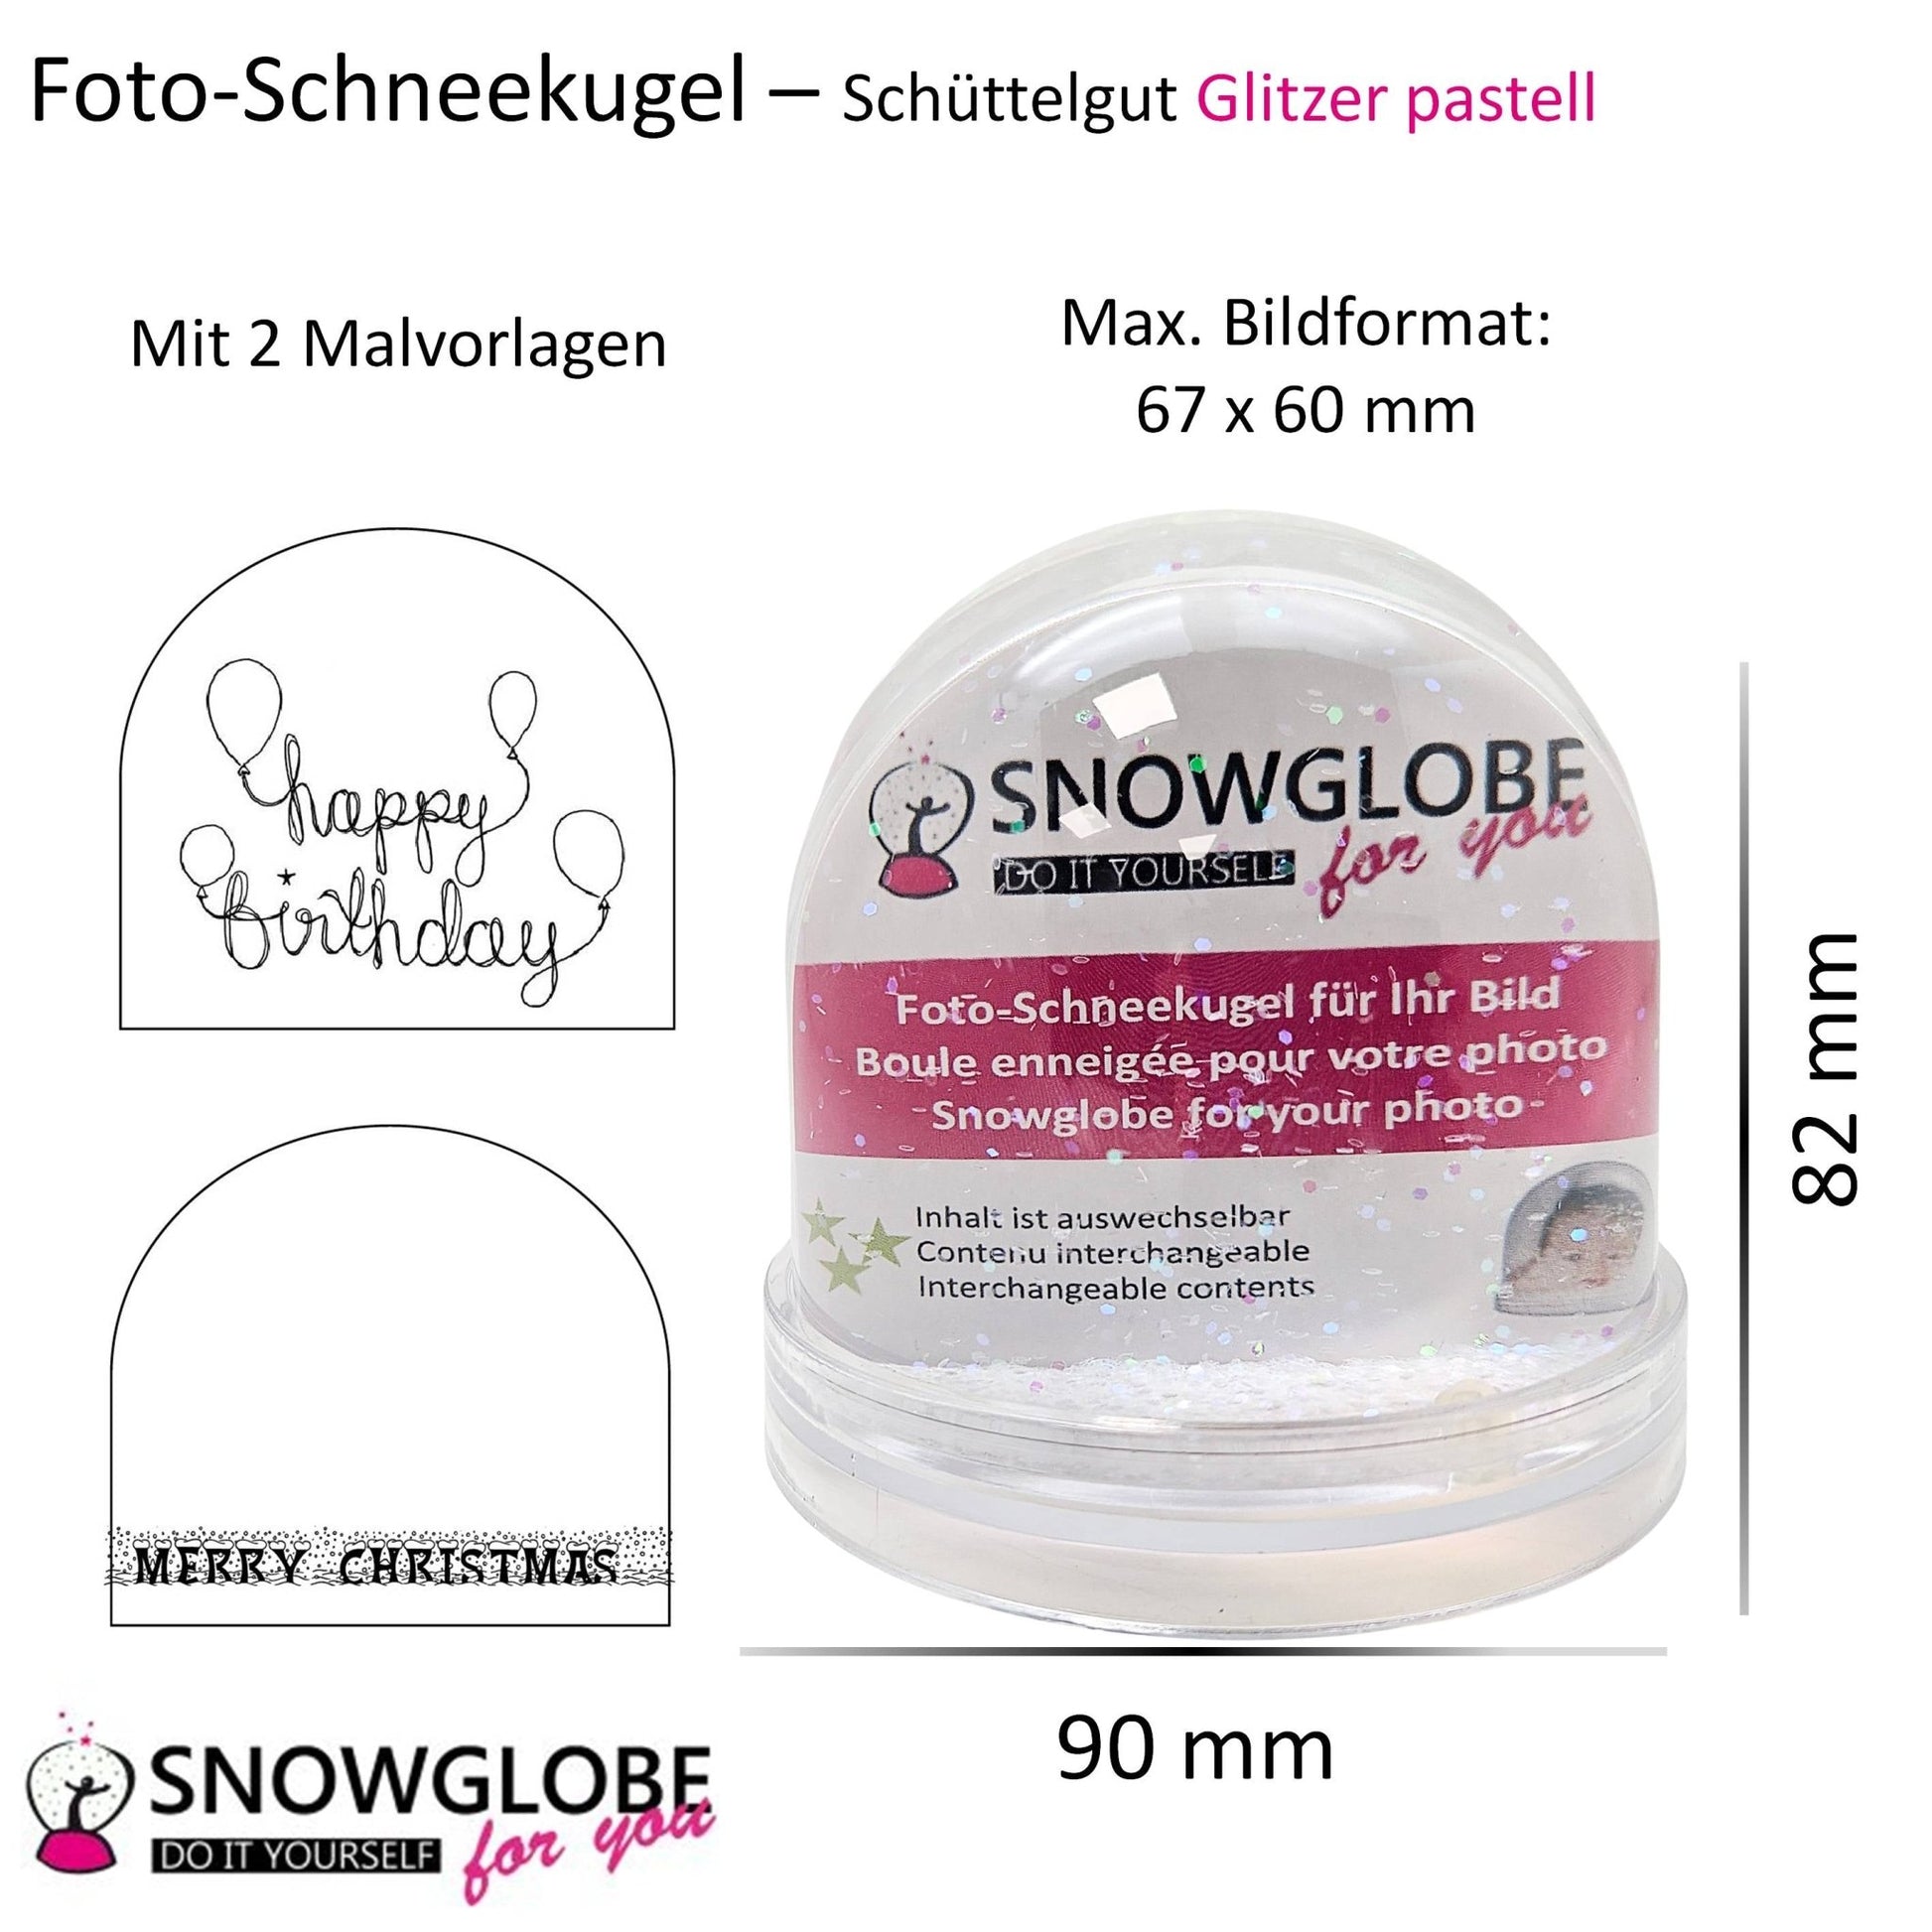 Foto-Schneekugel groß mit transparentem Sockel und Glitzer - Einzelverpackung - Schneekugelhaus